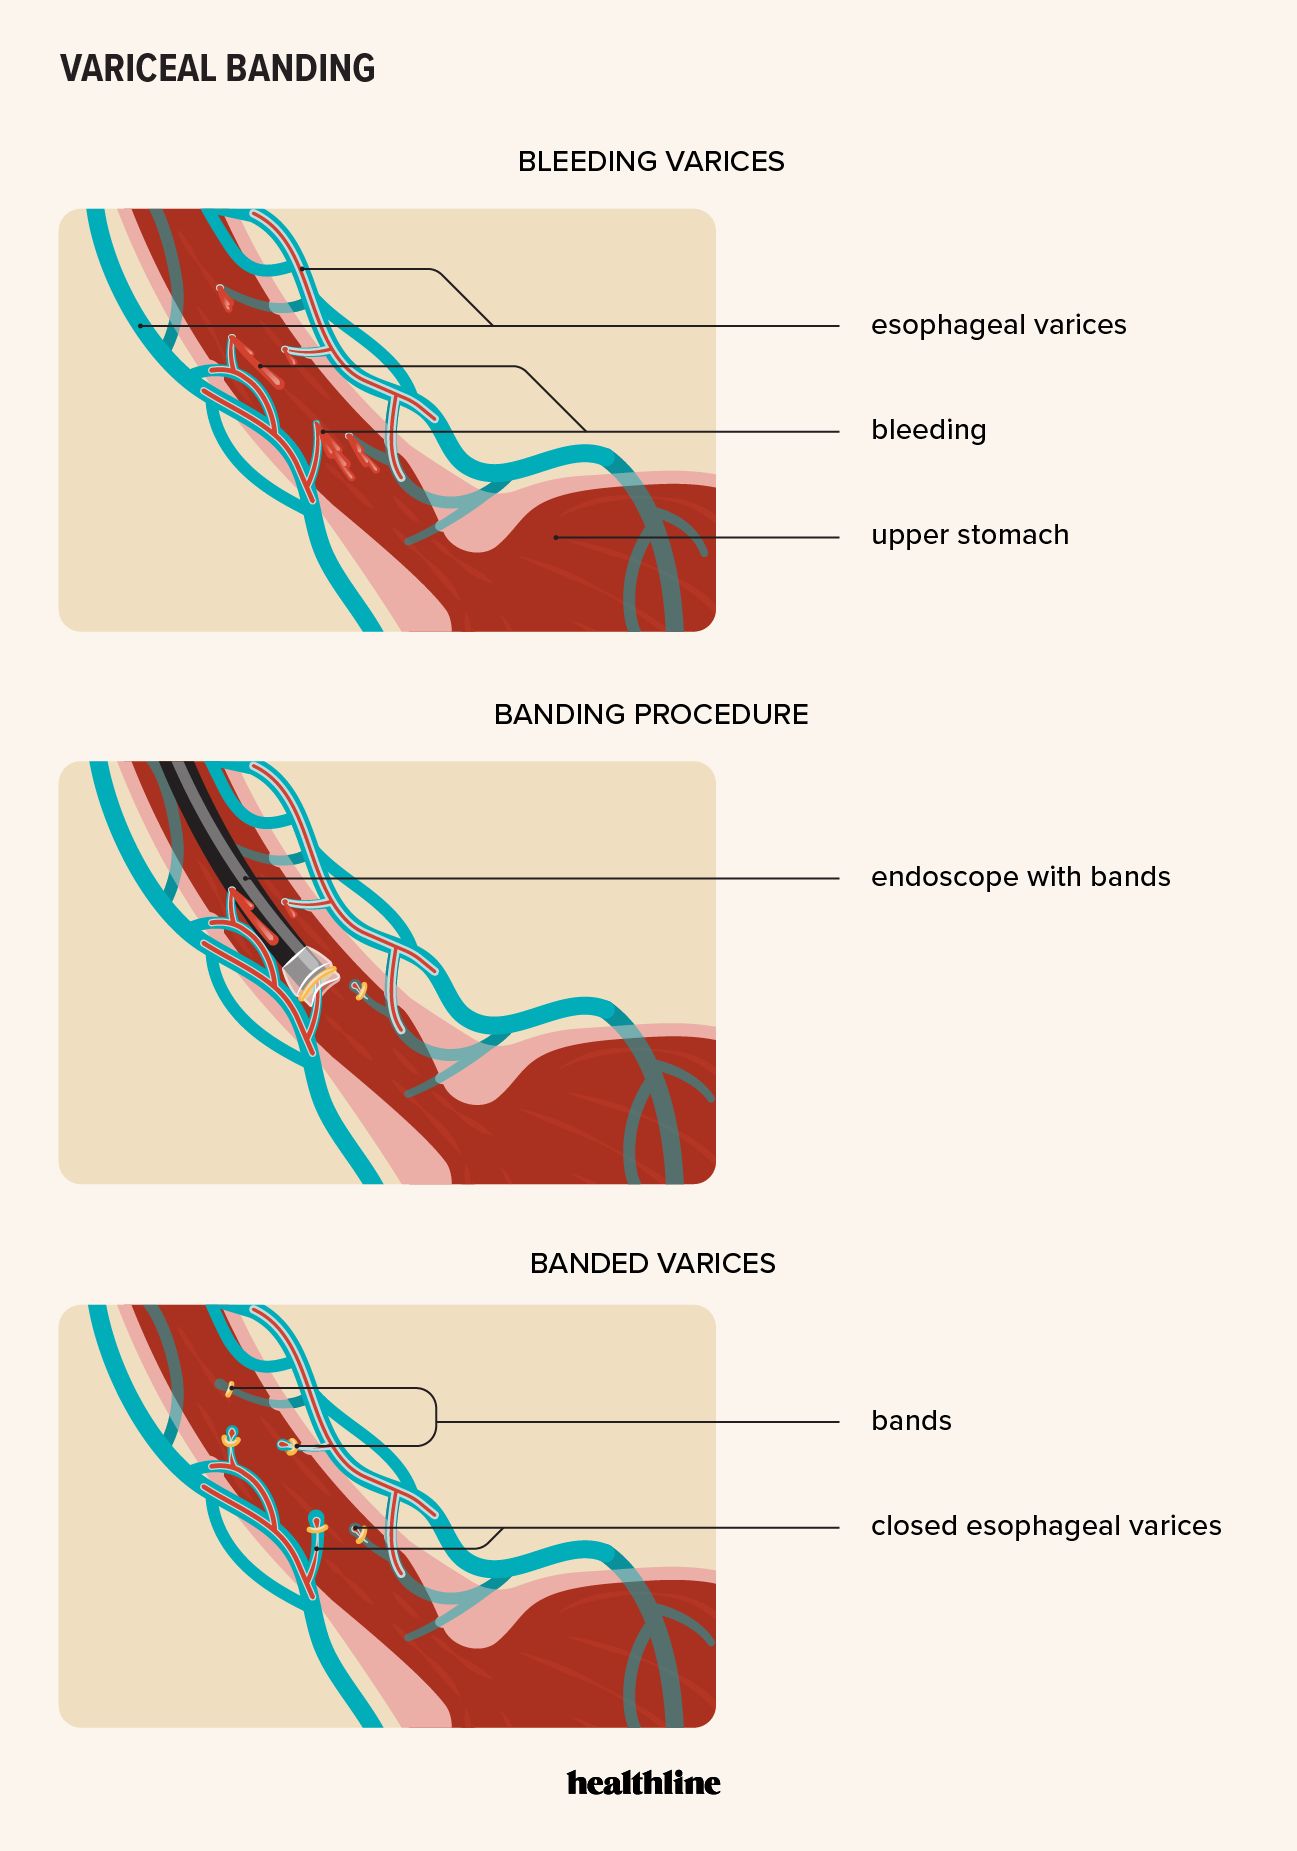 effect of variceal banding procedure on bleeding esophageal varices